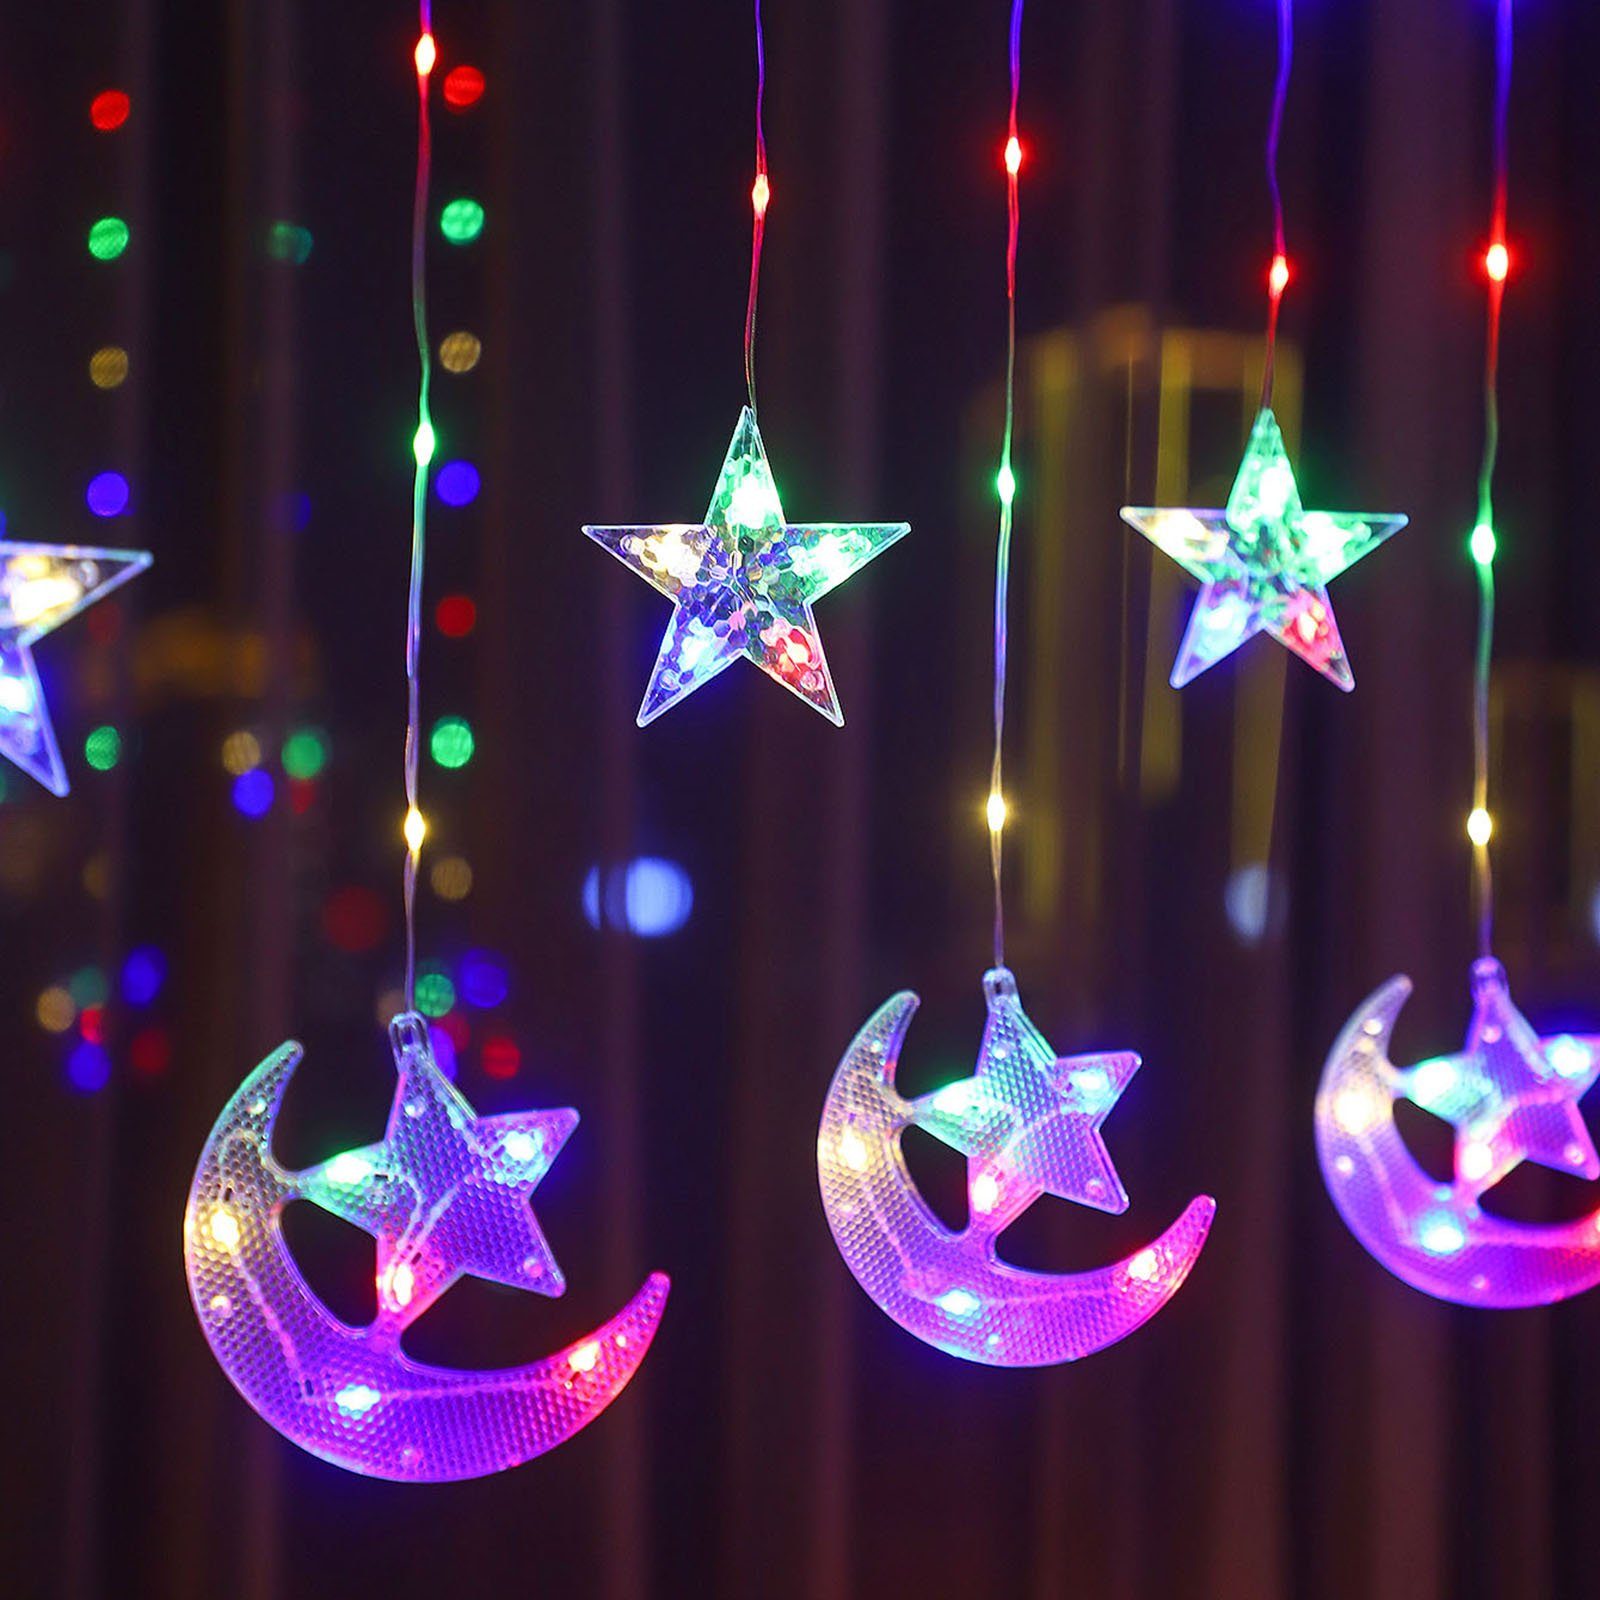 Rosnek LED-Lichtervorhang 2.3M, Mond mit Zelt für Party Ramadan batterie, Camping Stern, Weihnachten, Schlafzimmer Multicolor